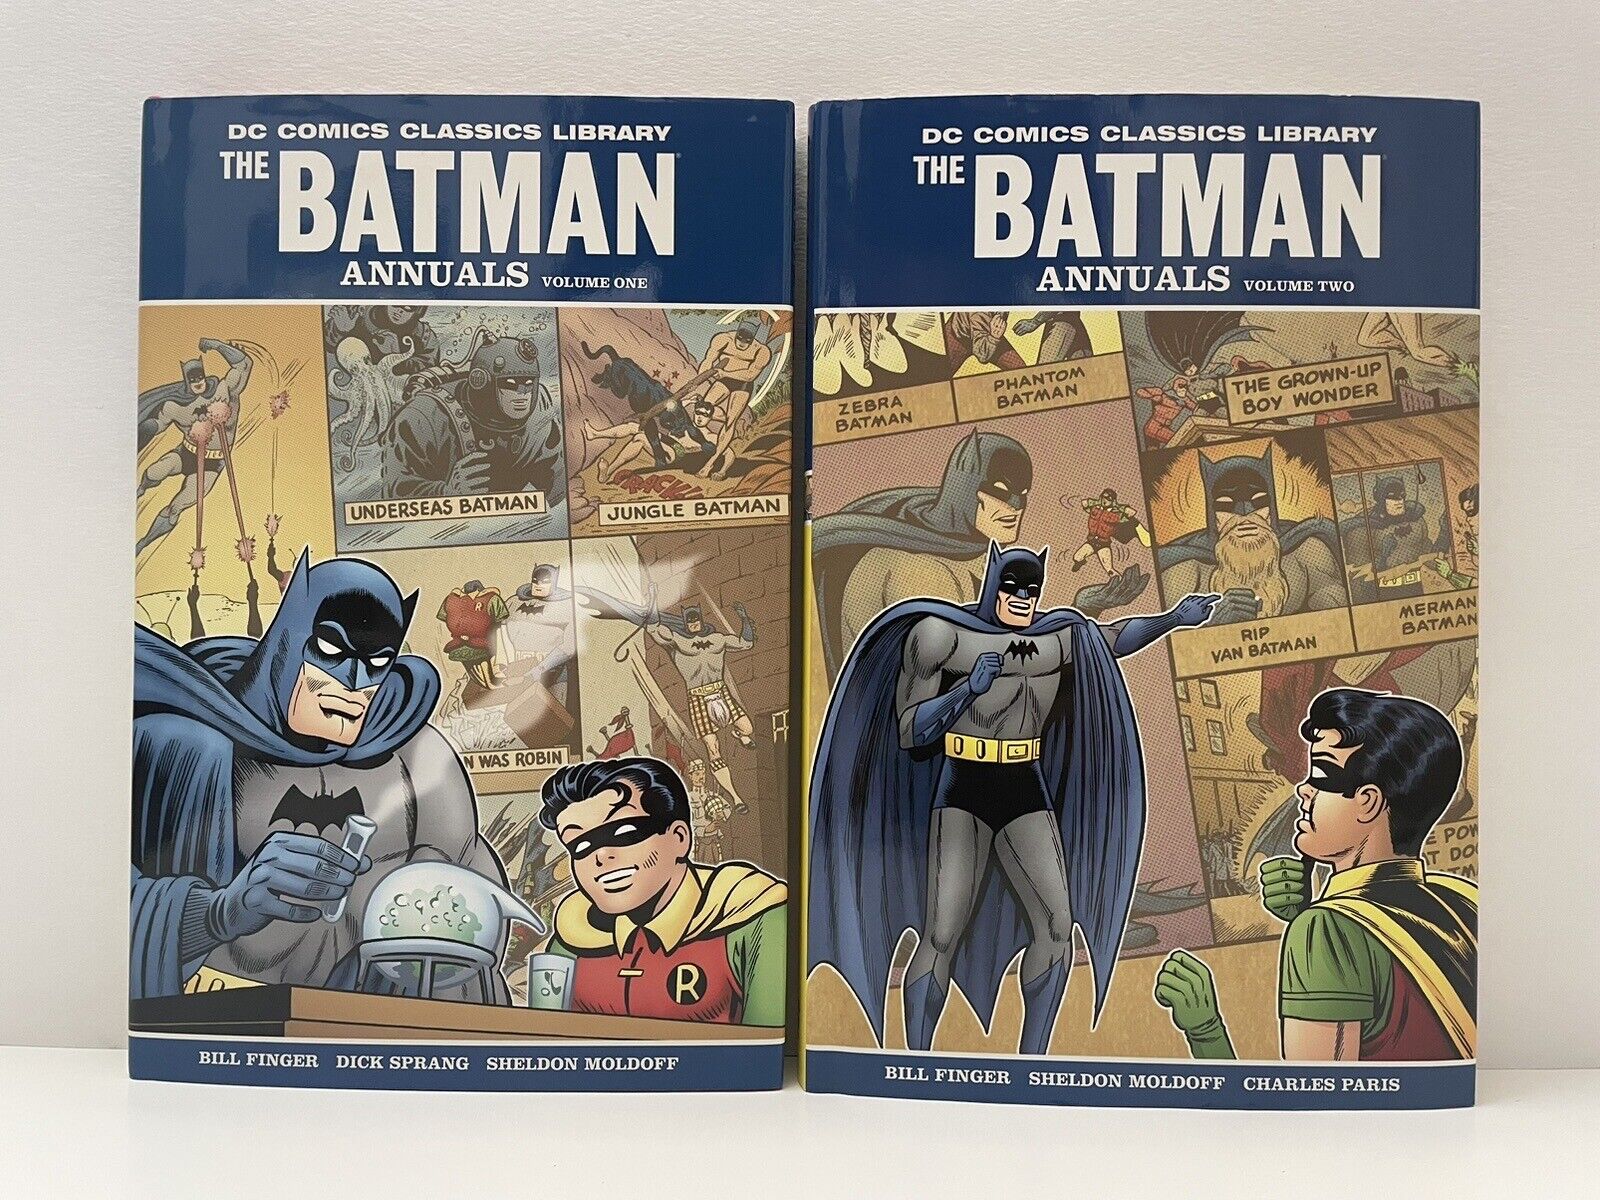 DC Comics Classics Library: The Batman Annuals Vol 1 & Vol 2 Hardcover HC